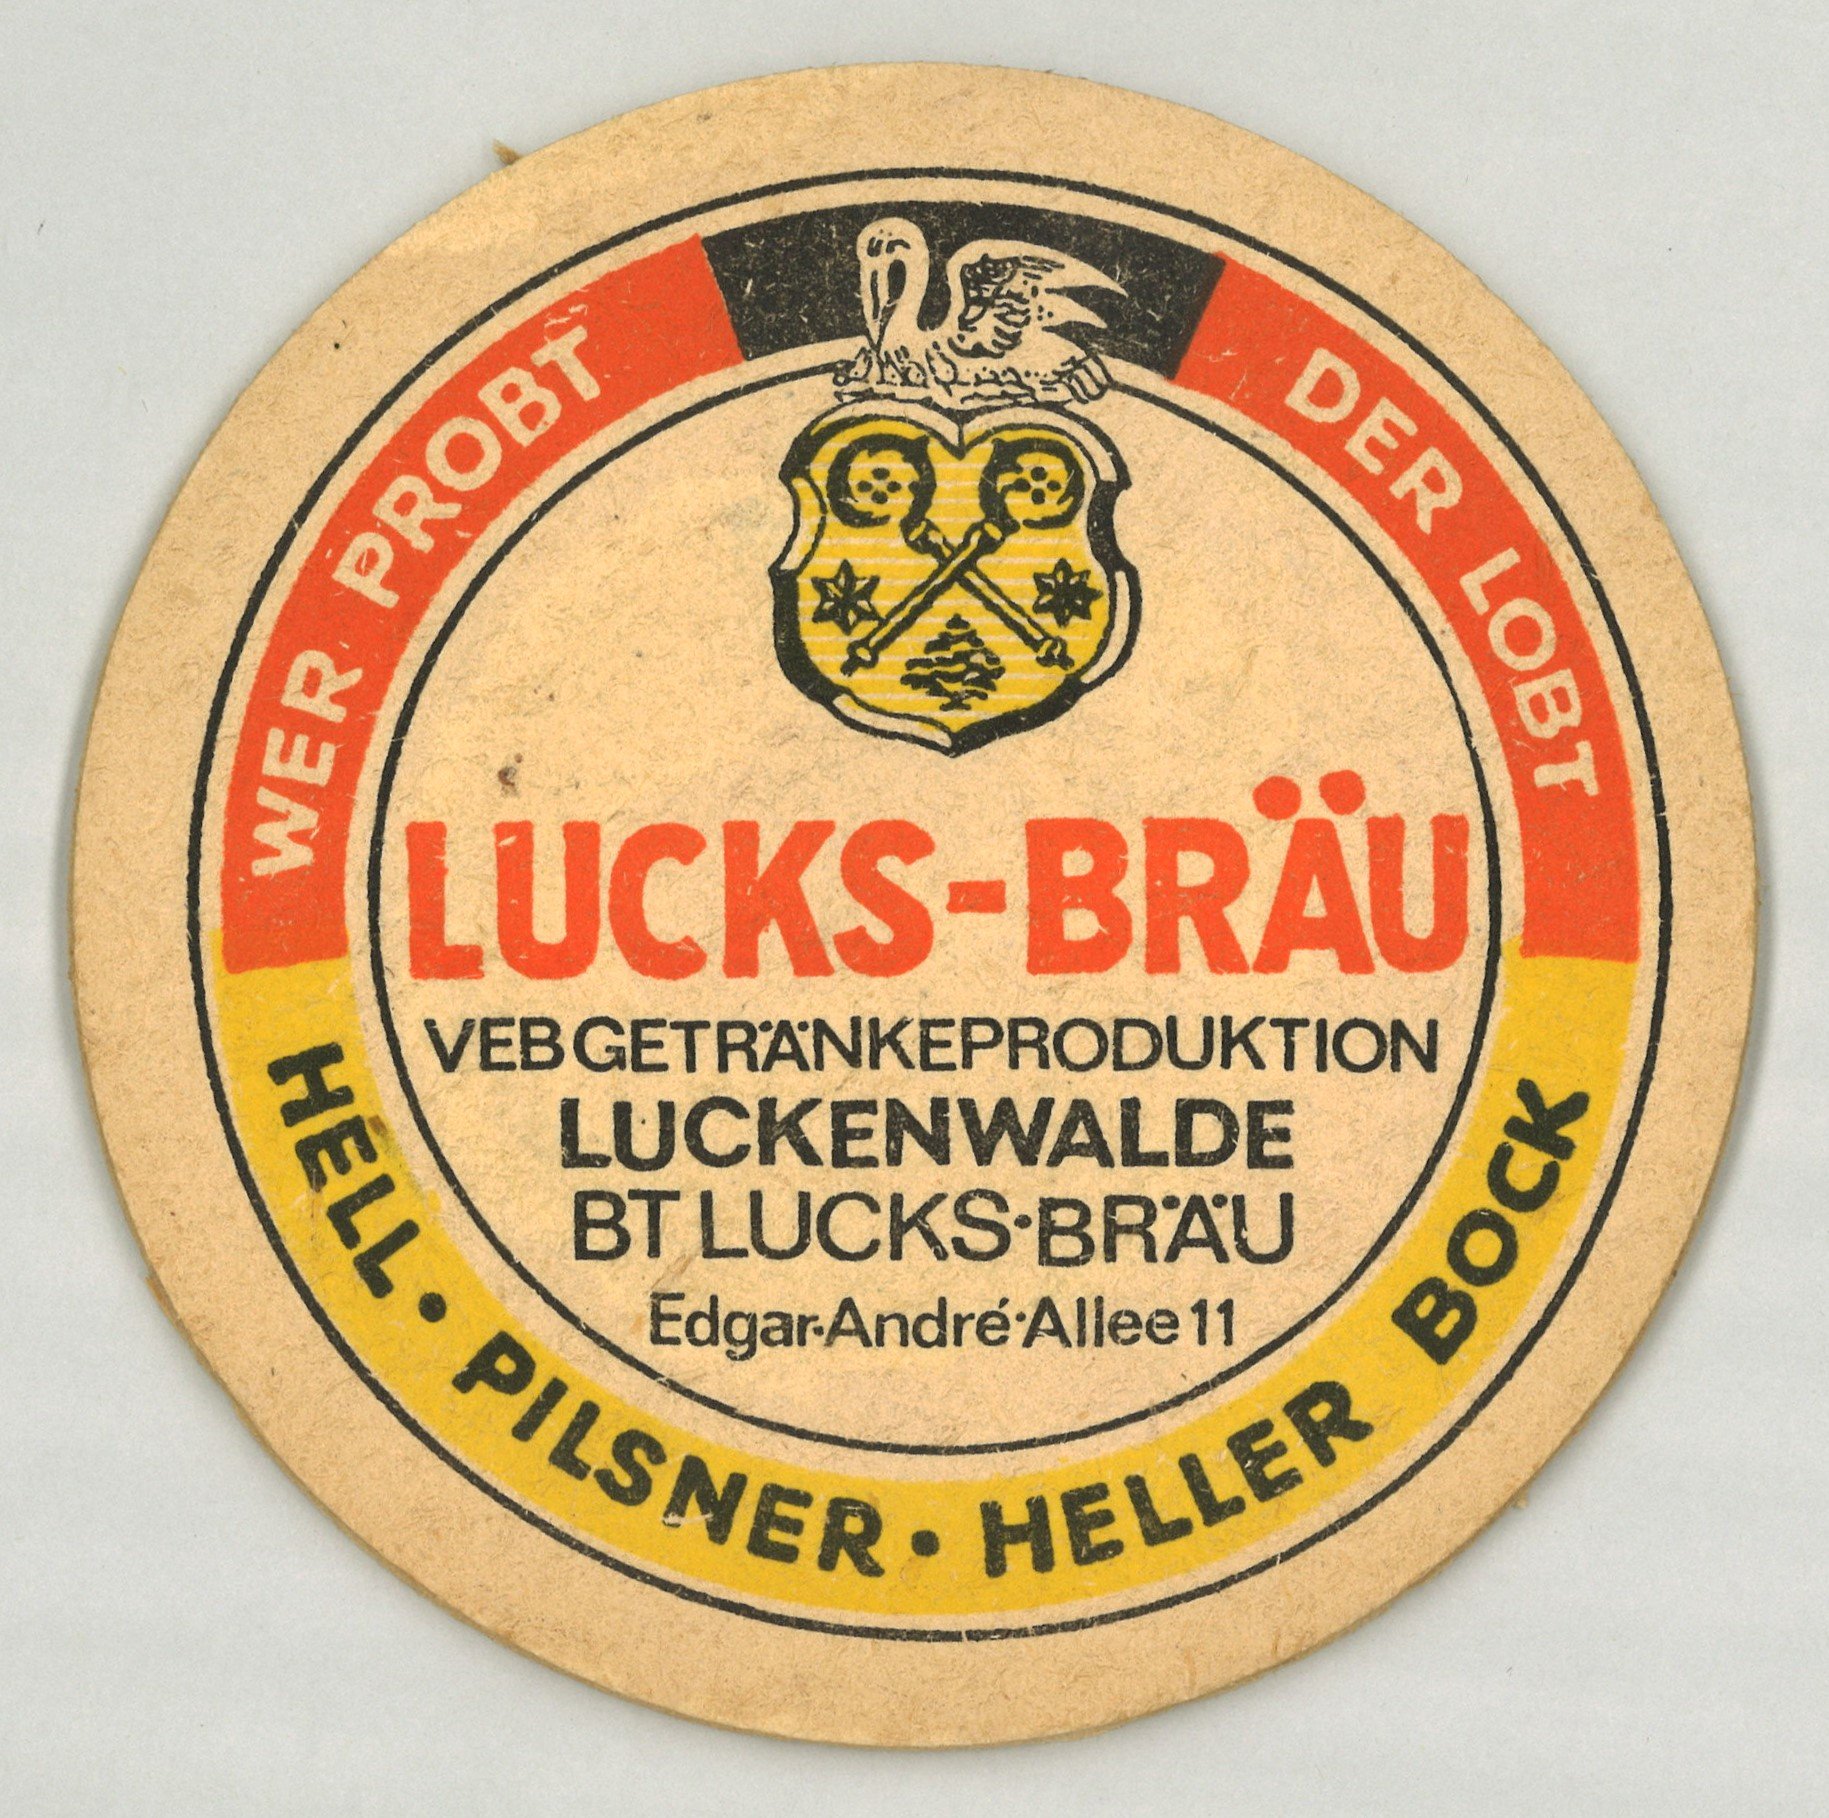 Luckenwale: VEB Getränkeproduktion Luckenwalde, Betriebsteil Lucks-Bräu (Landesgeschichtliche Vereinigung für die Mark Brandenburg e.V., Archiv CC BY)